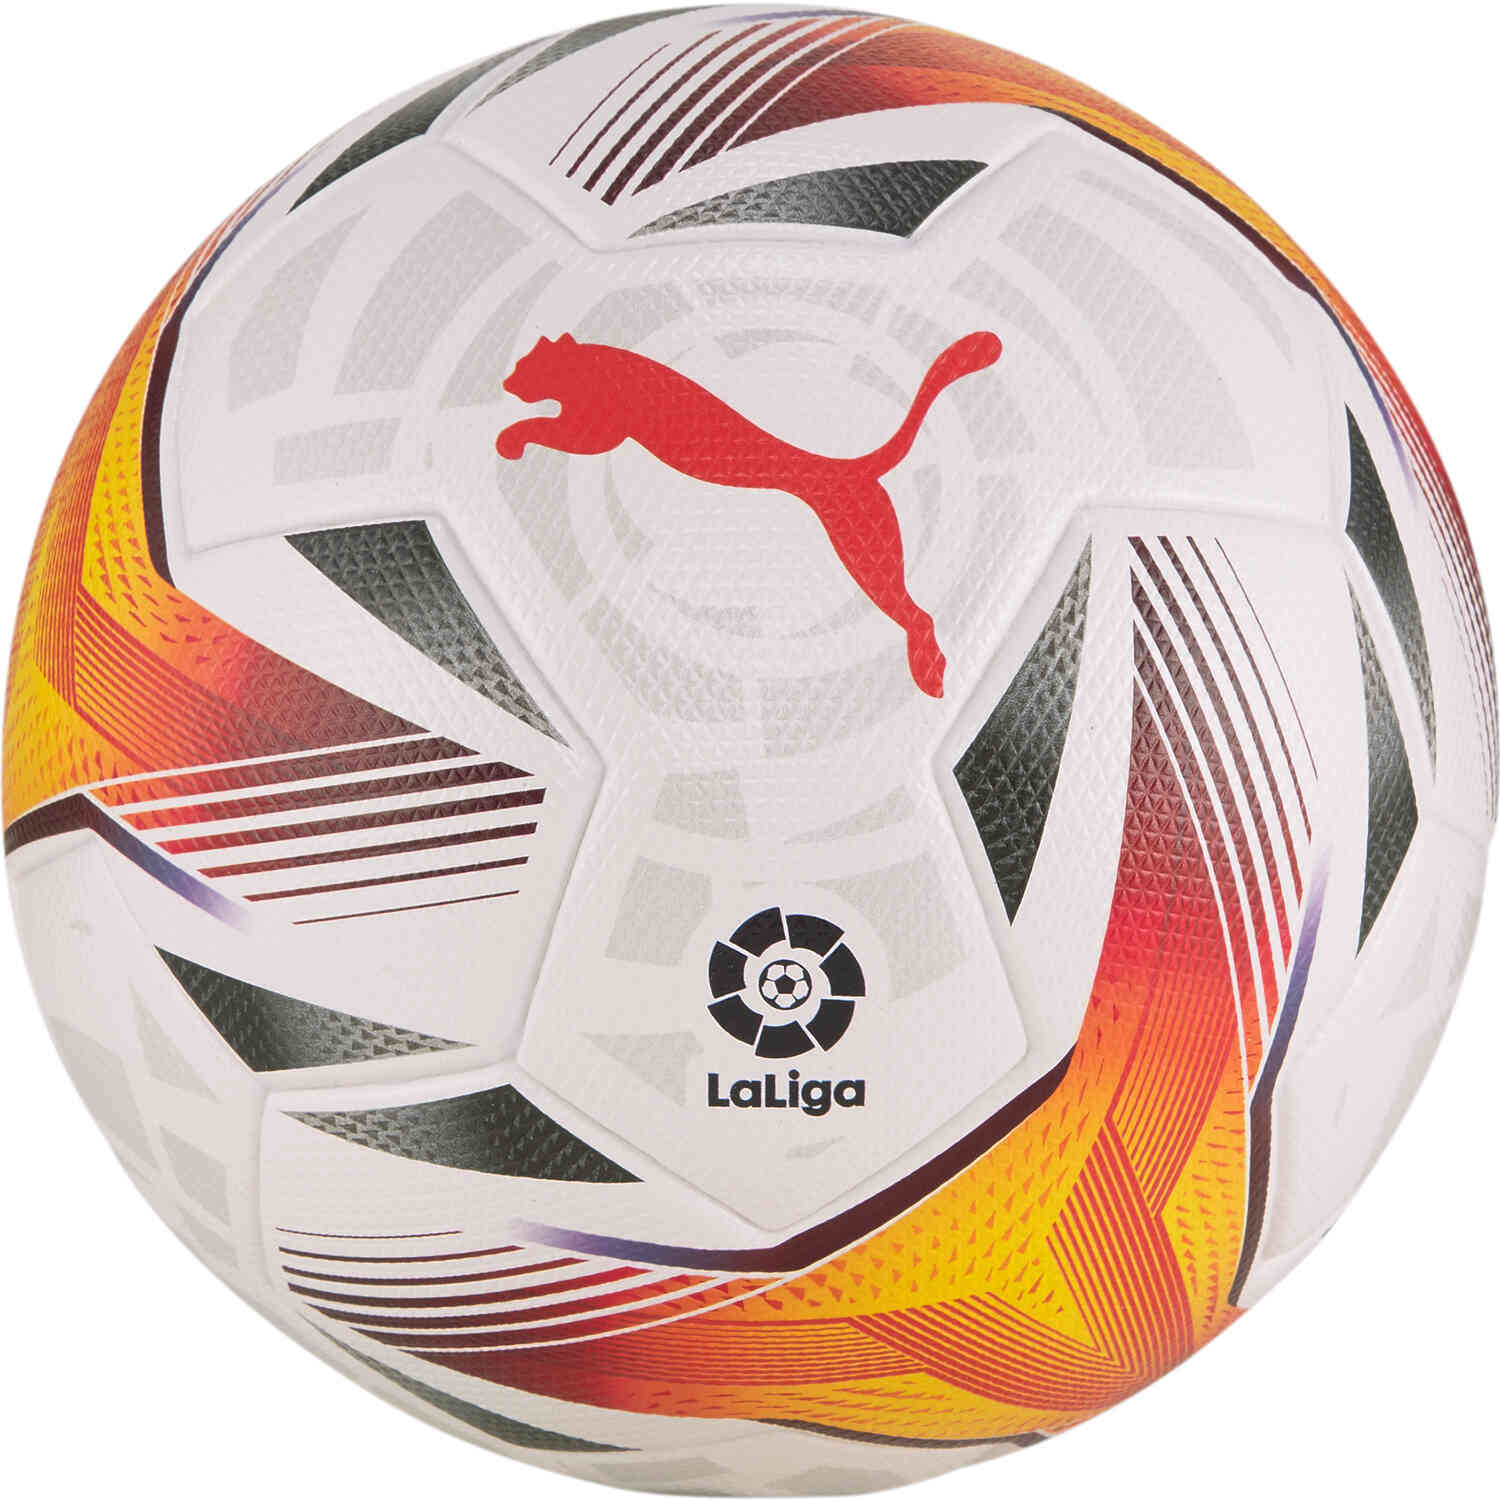 PUMA La Liga 1 Accelerate Official Match Soccer Ball - White & Multicolour - SoccerPro